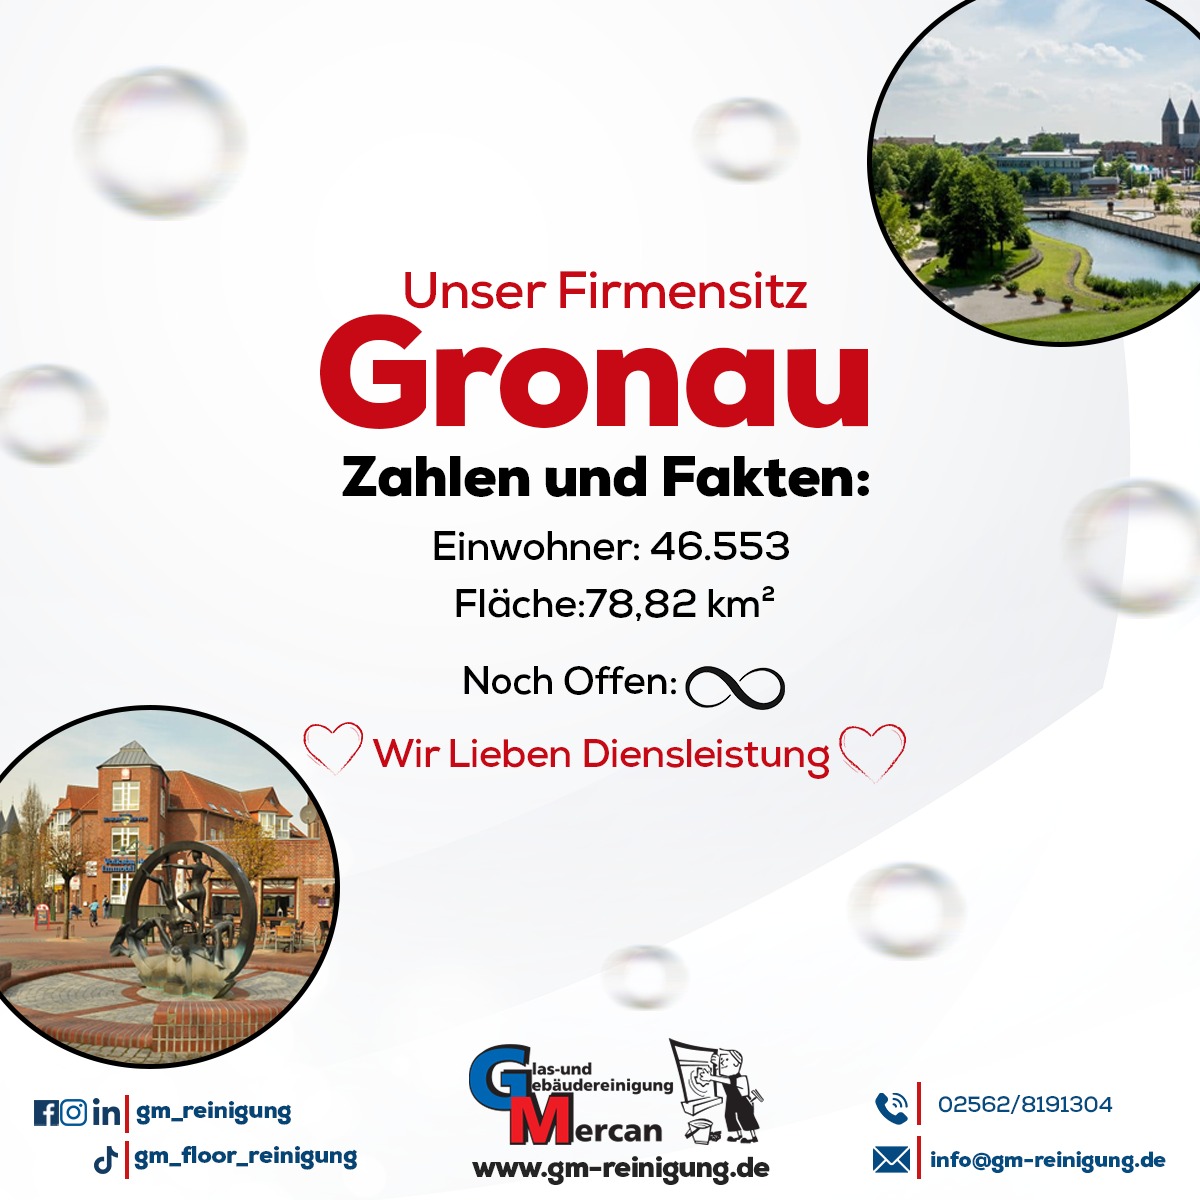 Gronau – was macht die Stadt unseres Firmensitzes aus?